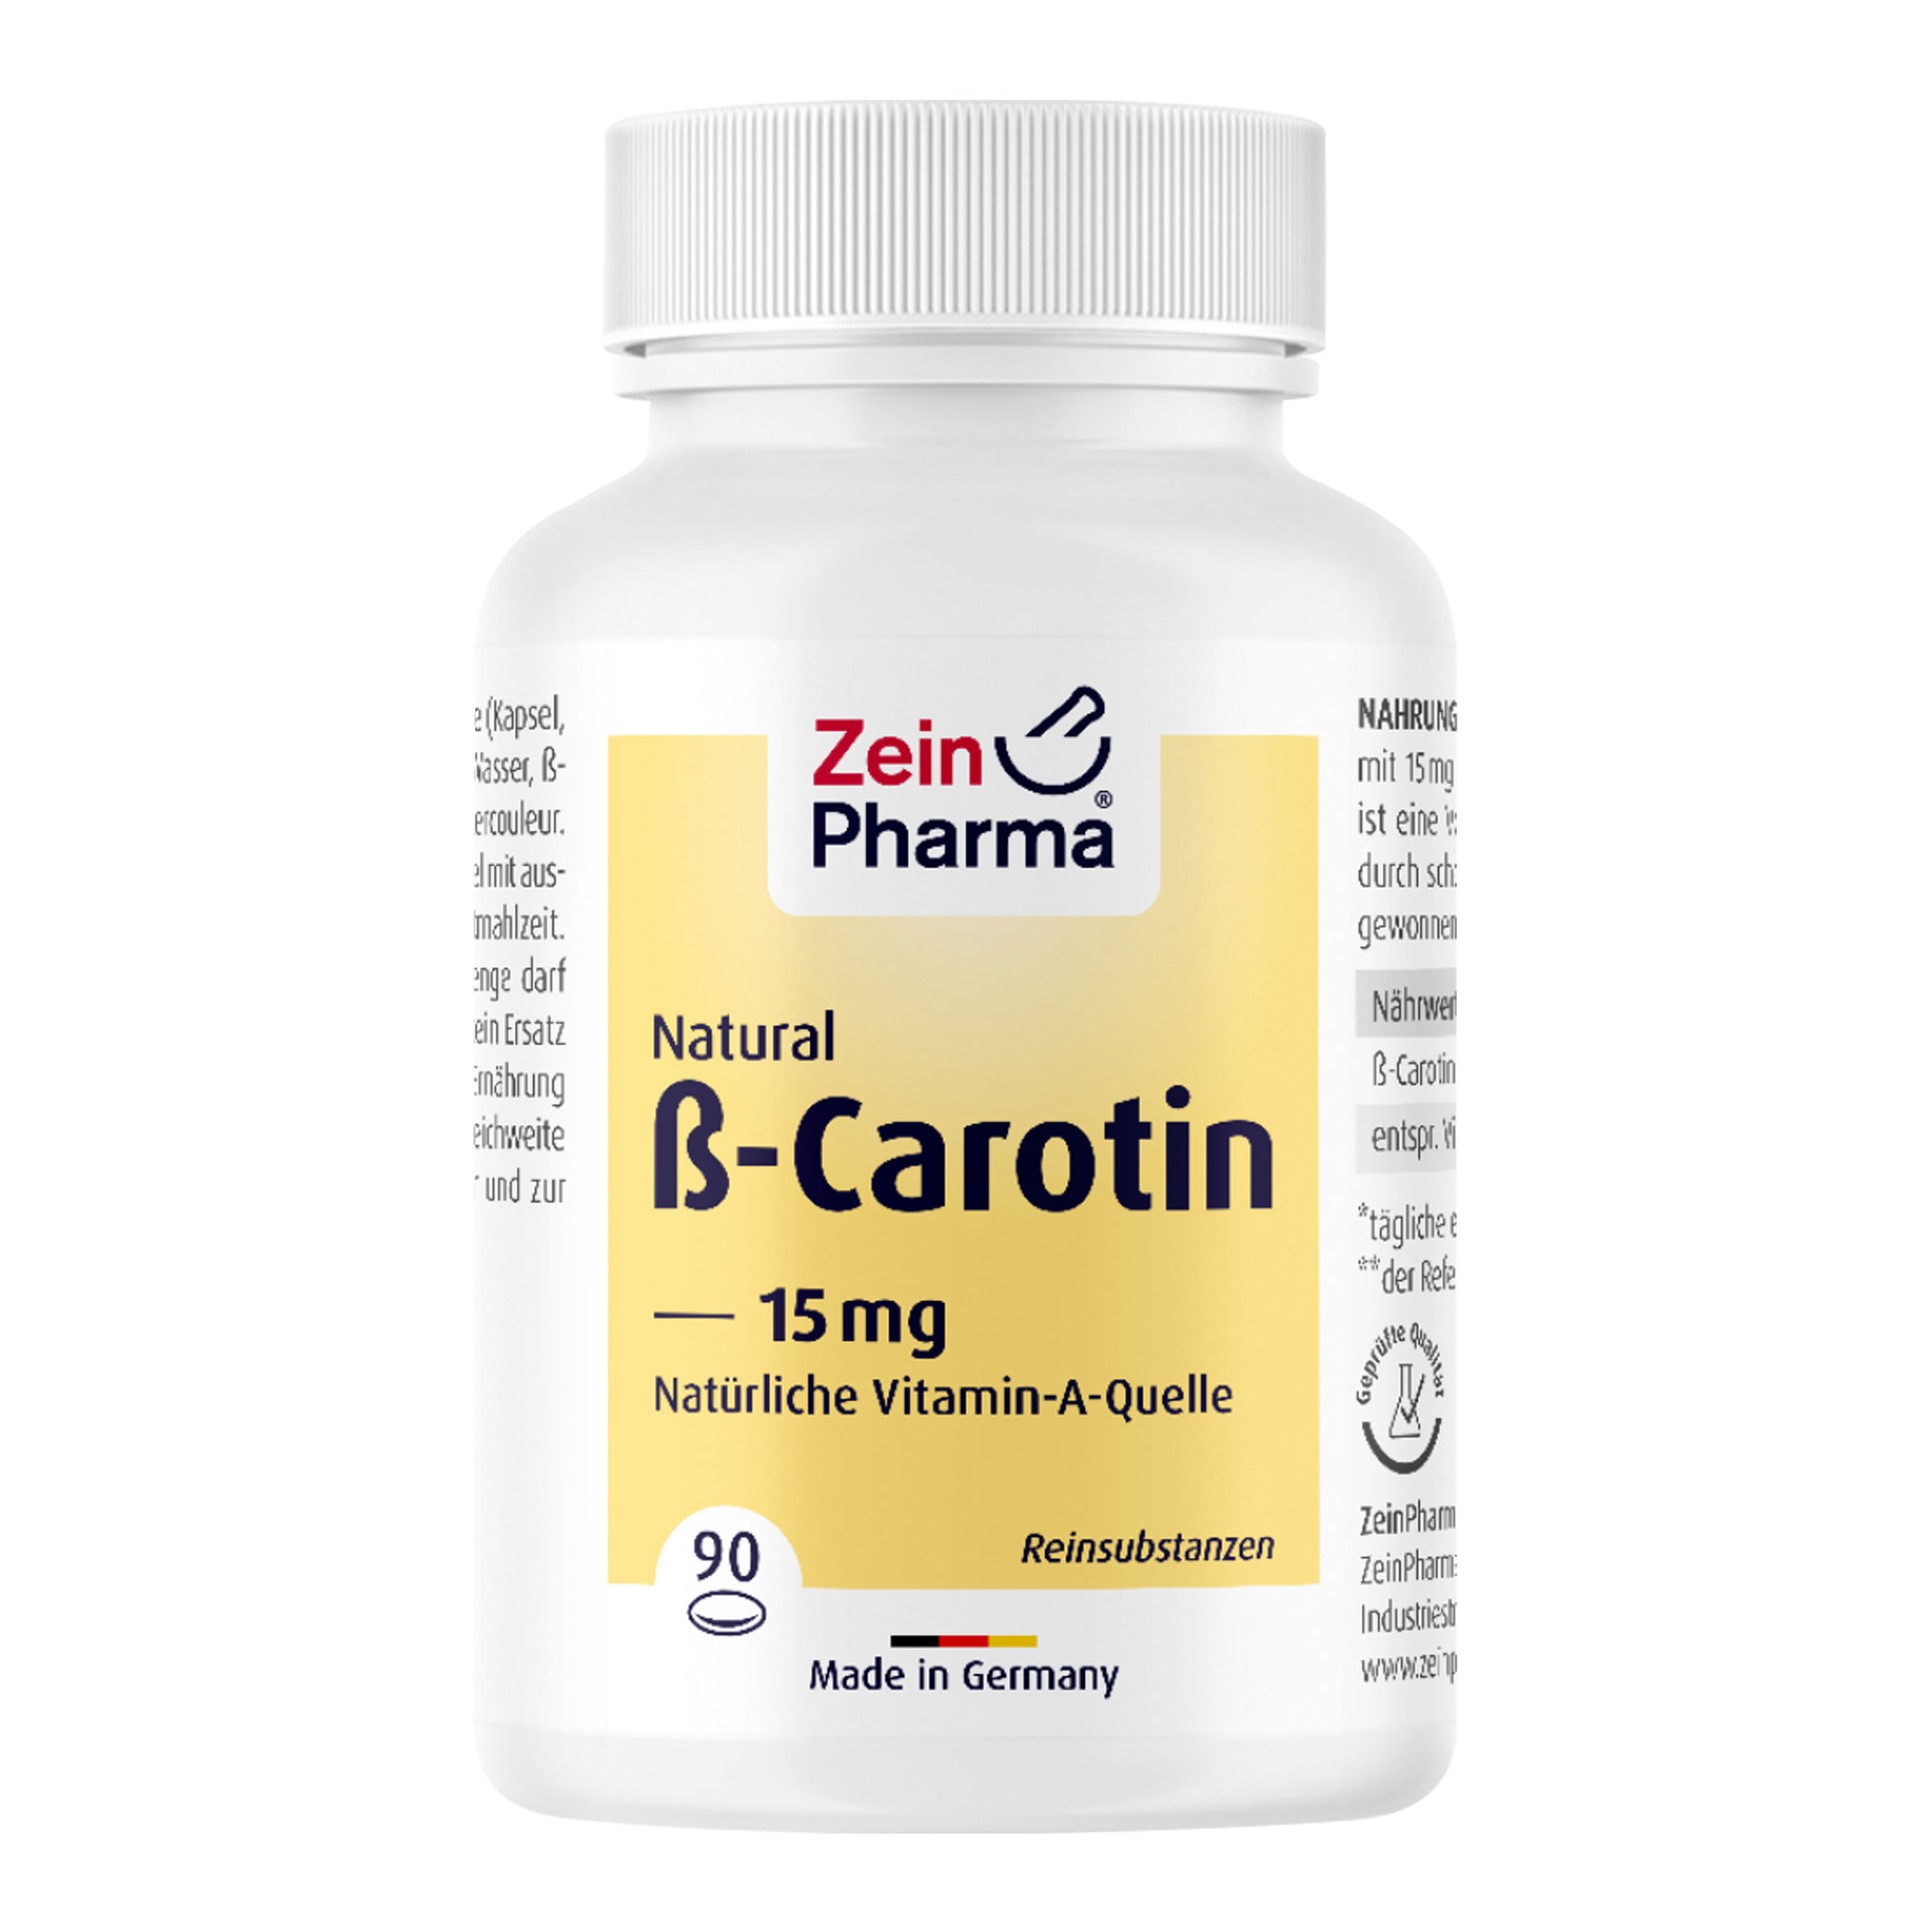 Nahrungsergänzungsmittel mit Beta-Carotin aus natürlicher Fermentation gewonnen in einer öligen Formulierung.